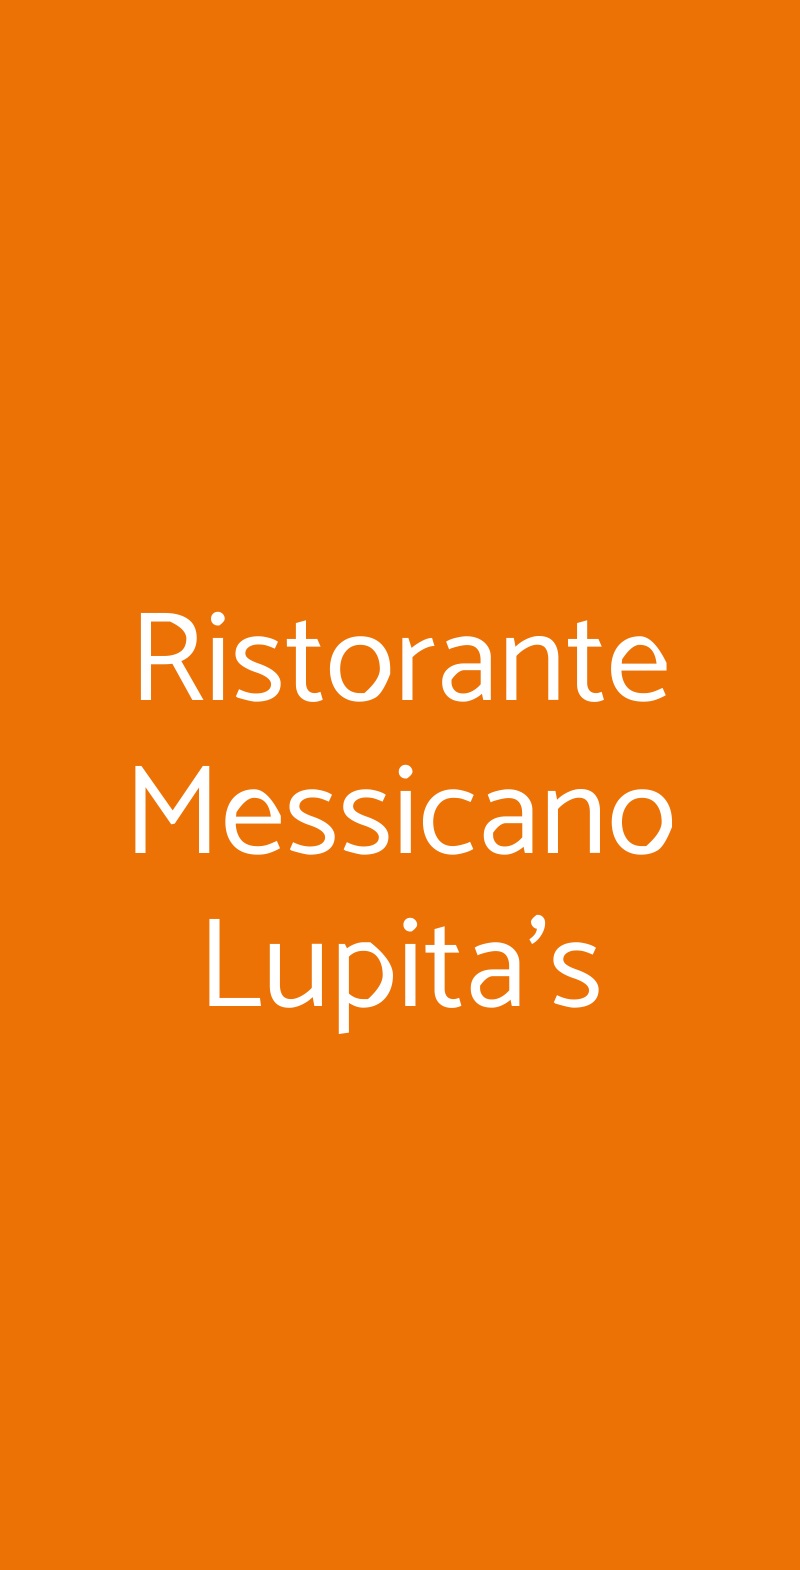 Ristorante Messicano Lupita's Cazzago San Martino menù 1 pagina